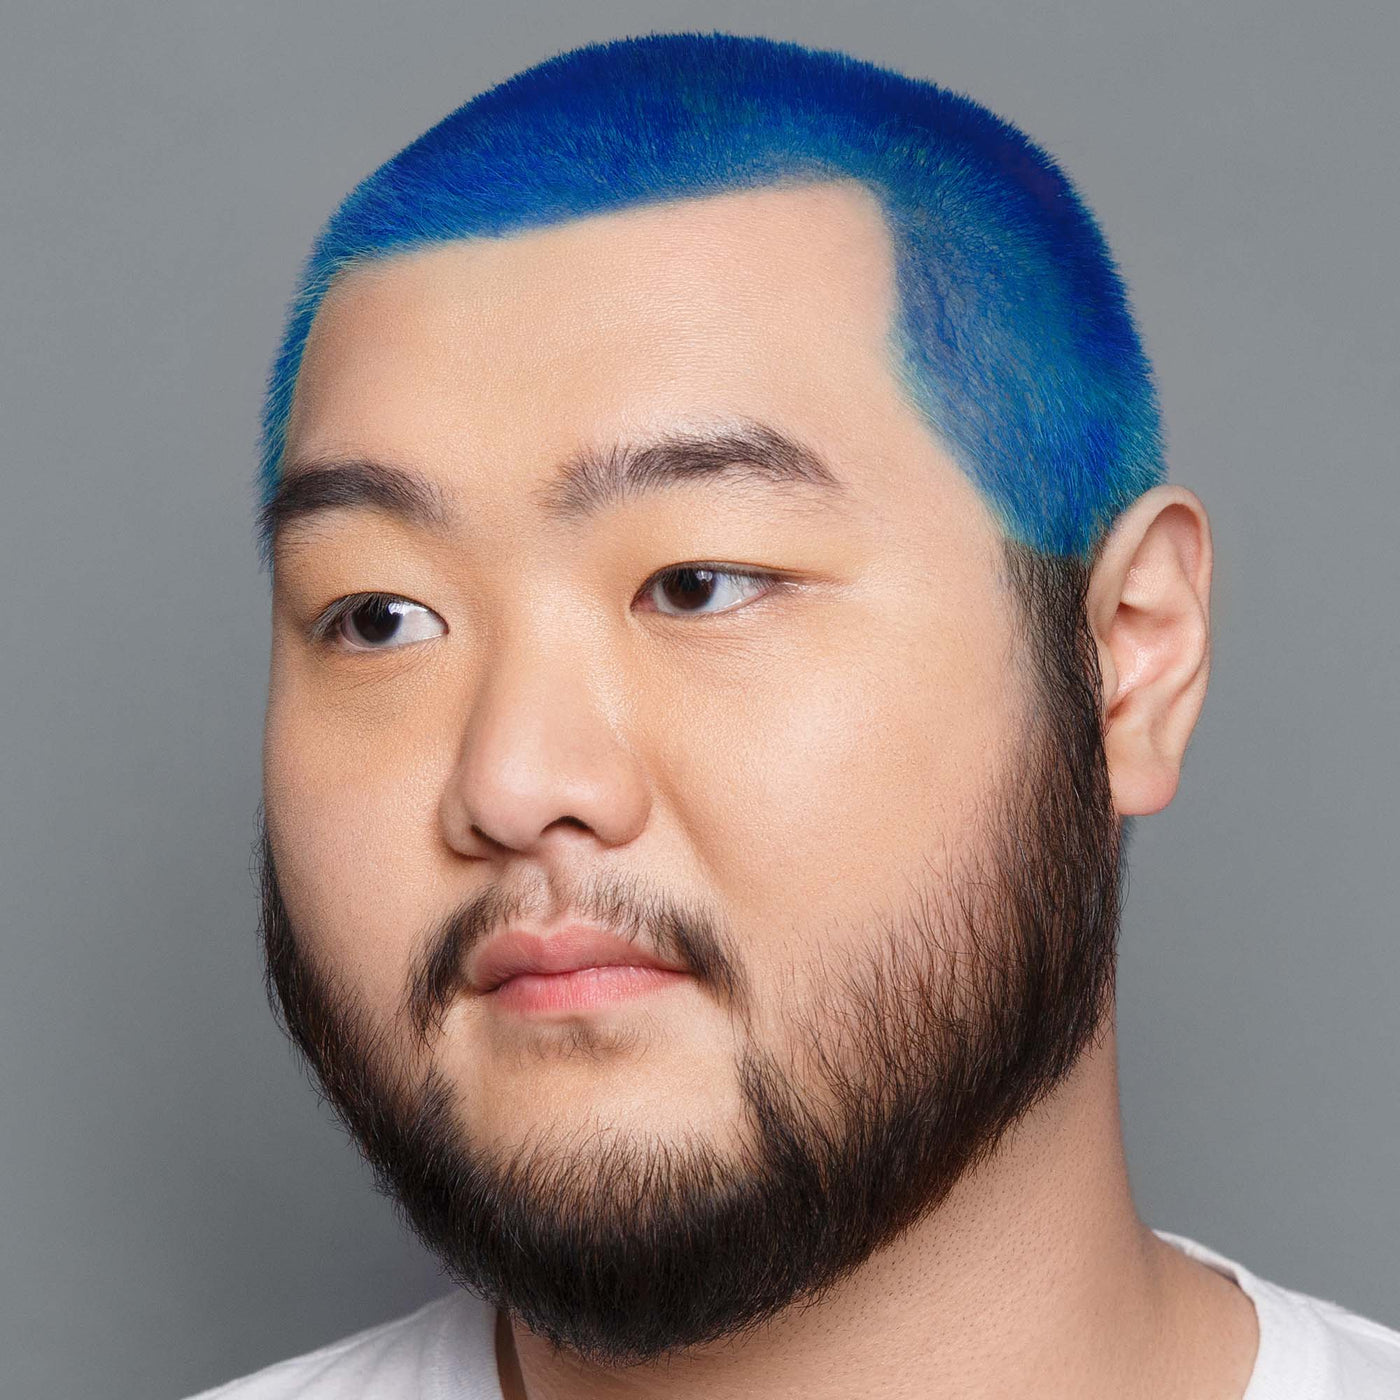 Hair Color Starter Kit - Blue Ruin